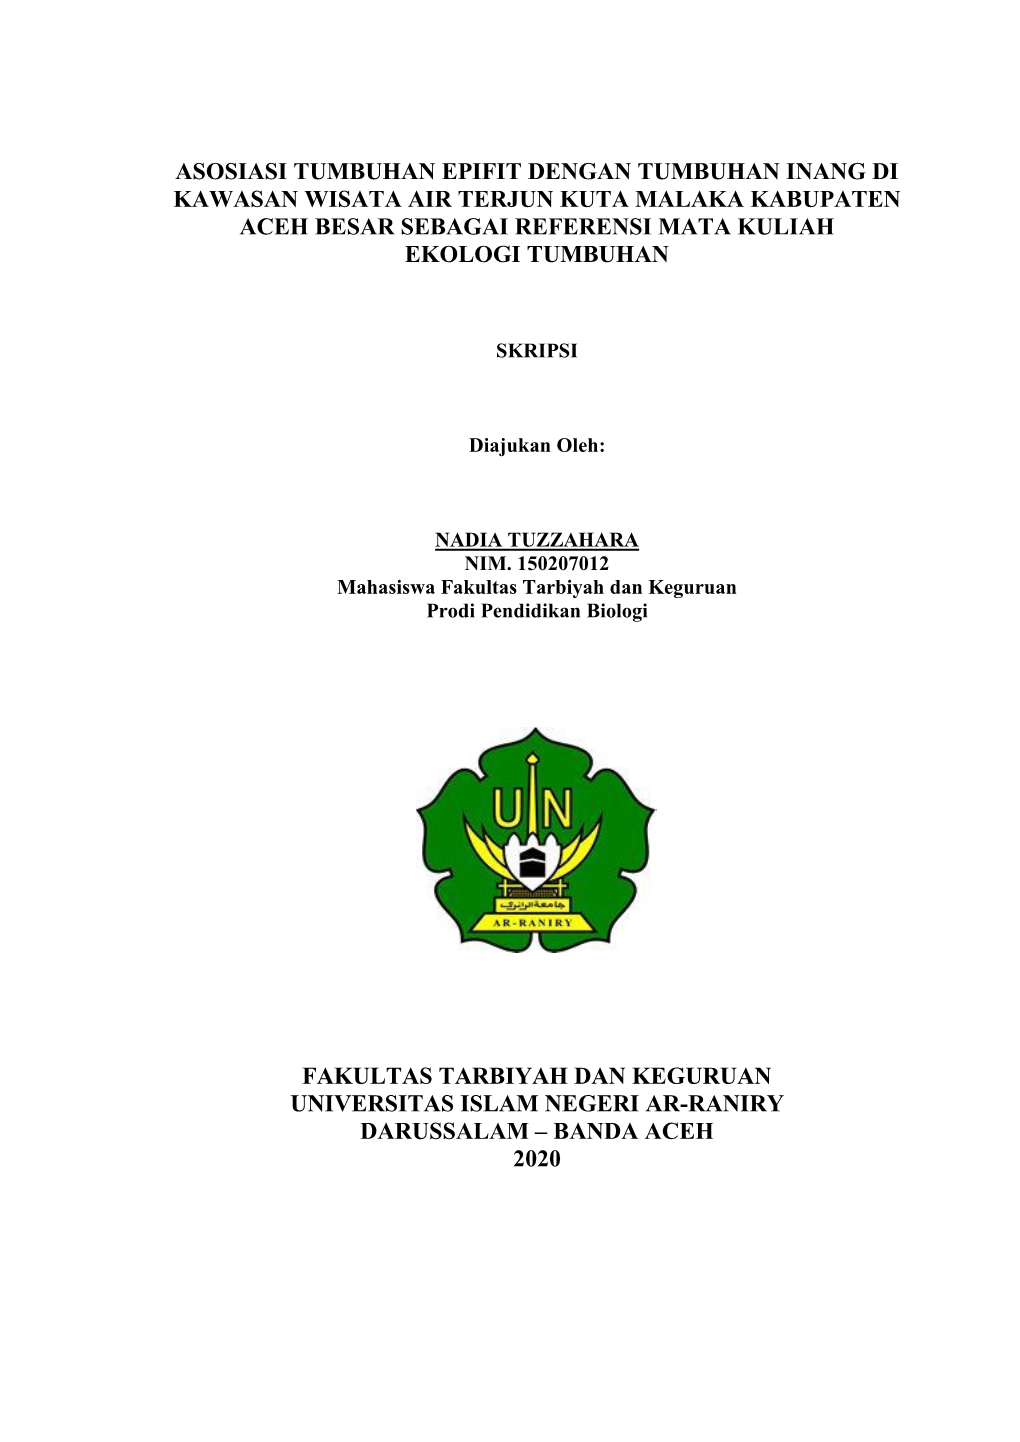 Asosiasi Tumbuhan Epifit Dengan Tumbuhan Inang Di Kawasan Wisata Air Terjun Kuta Malaka Kabupaten Aceh Besar Sebagai Referensi Mata Kuliah Ekologi Tumbuhan